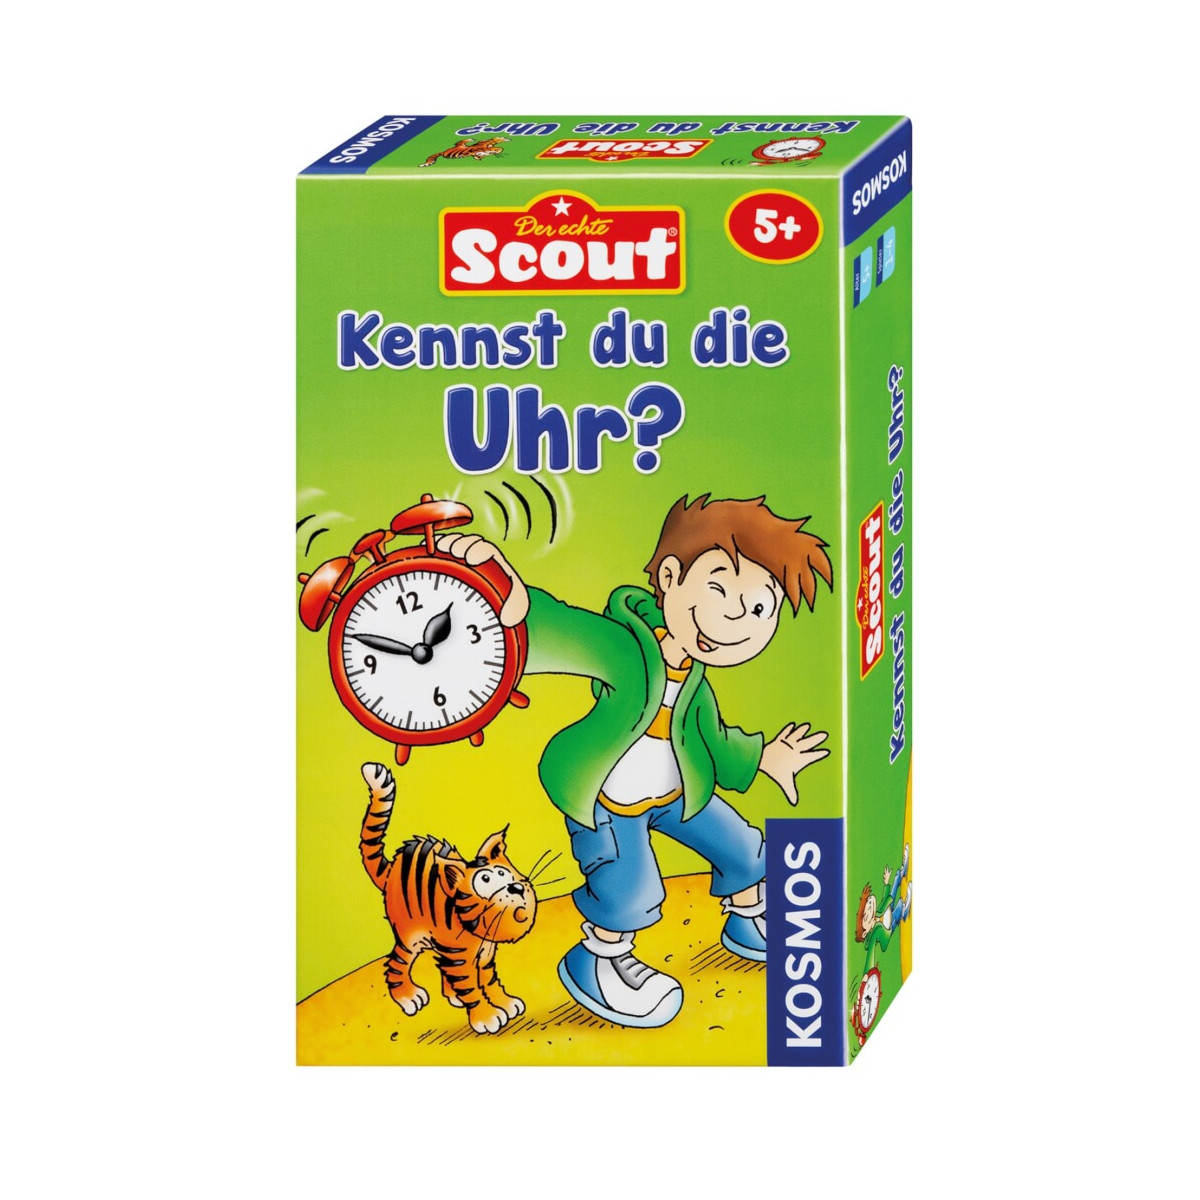 Scout Kennst du die Uhr?